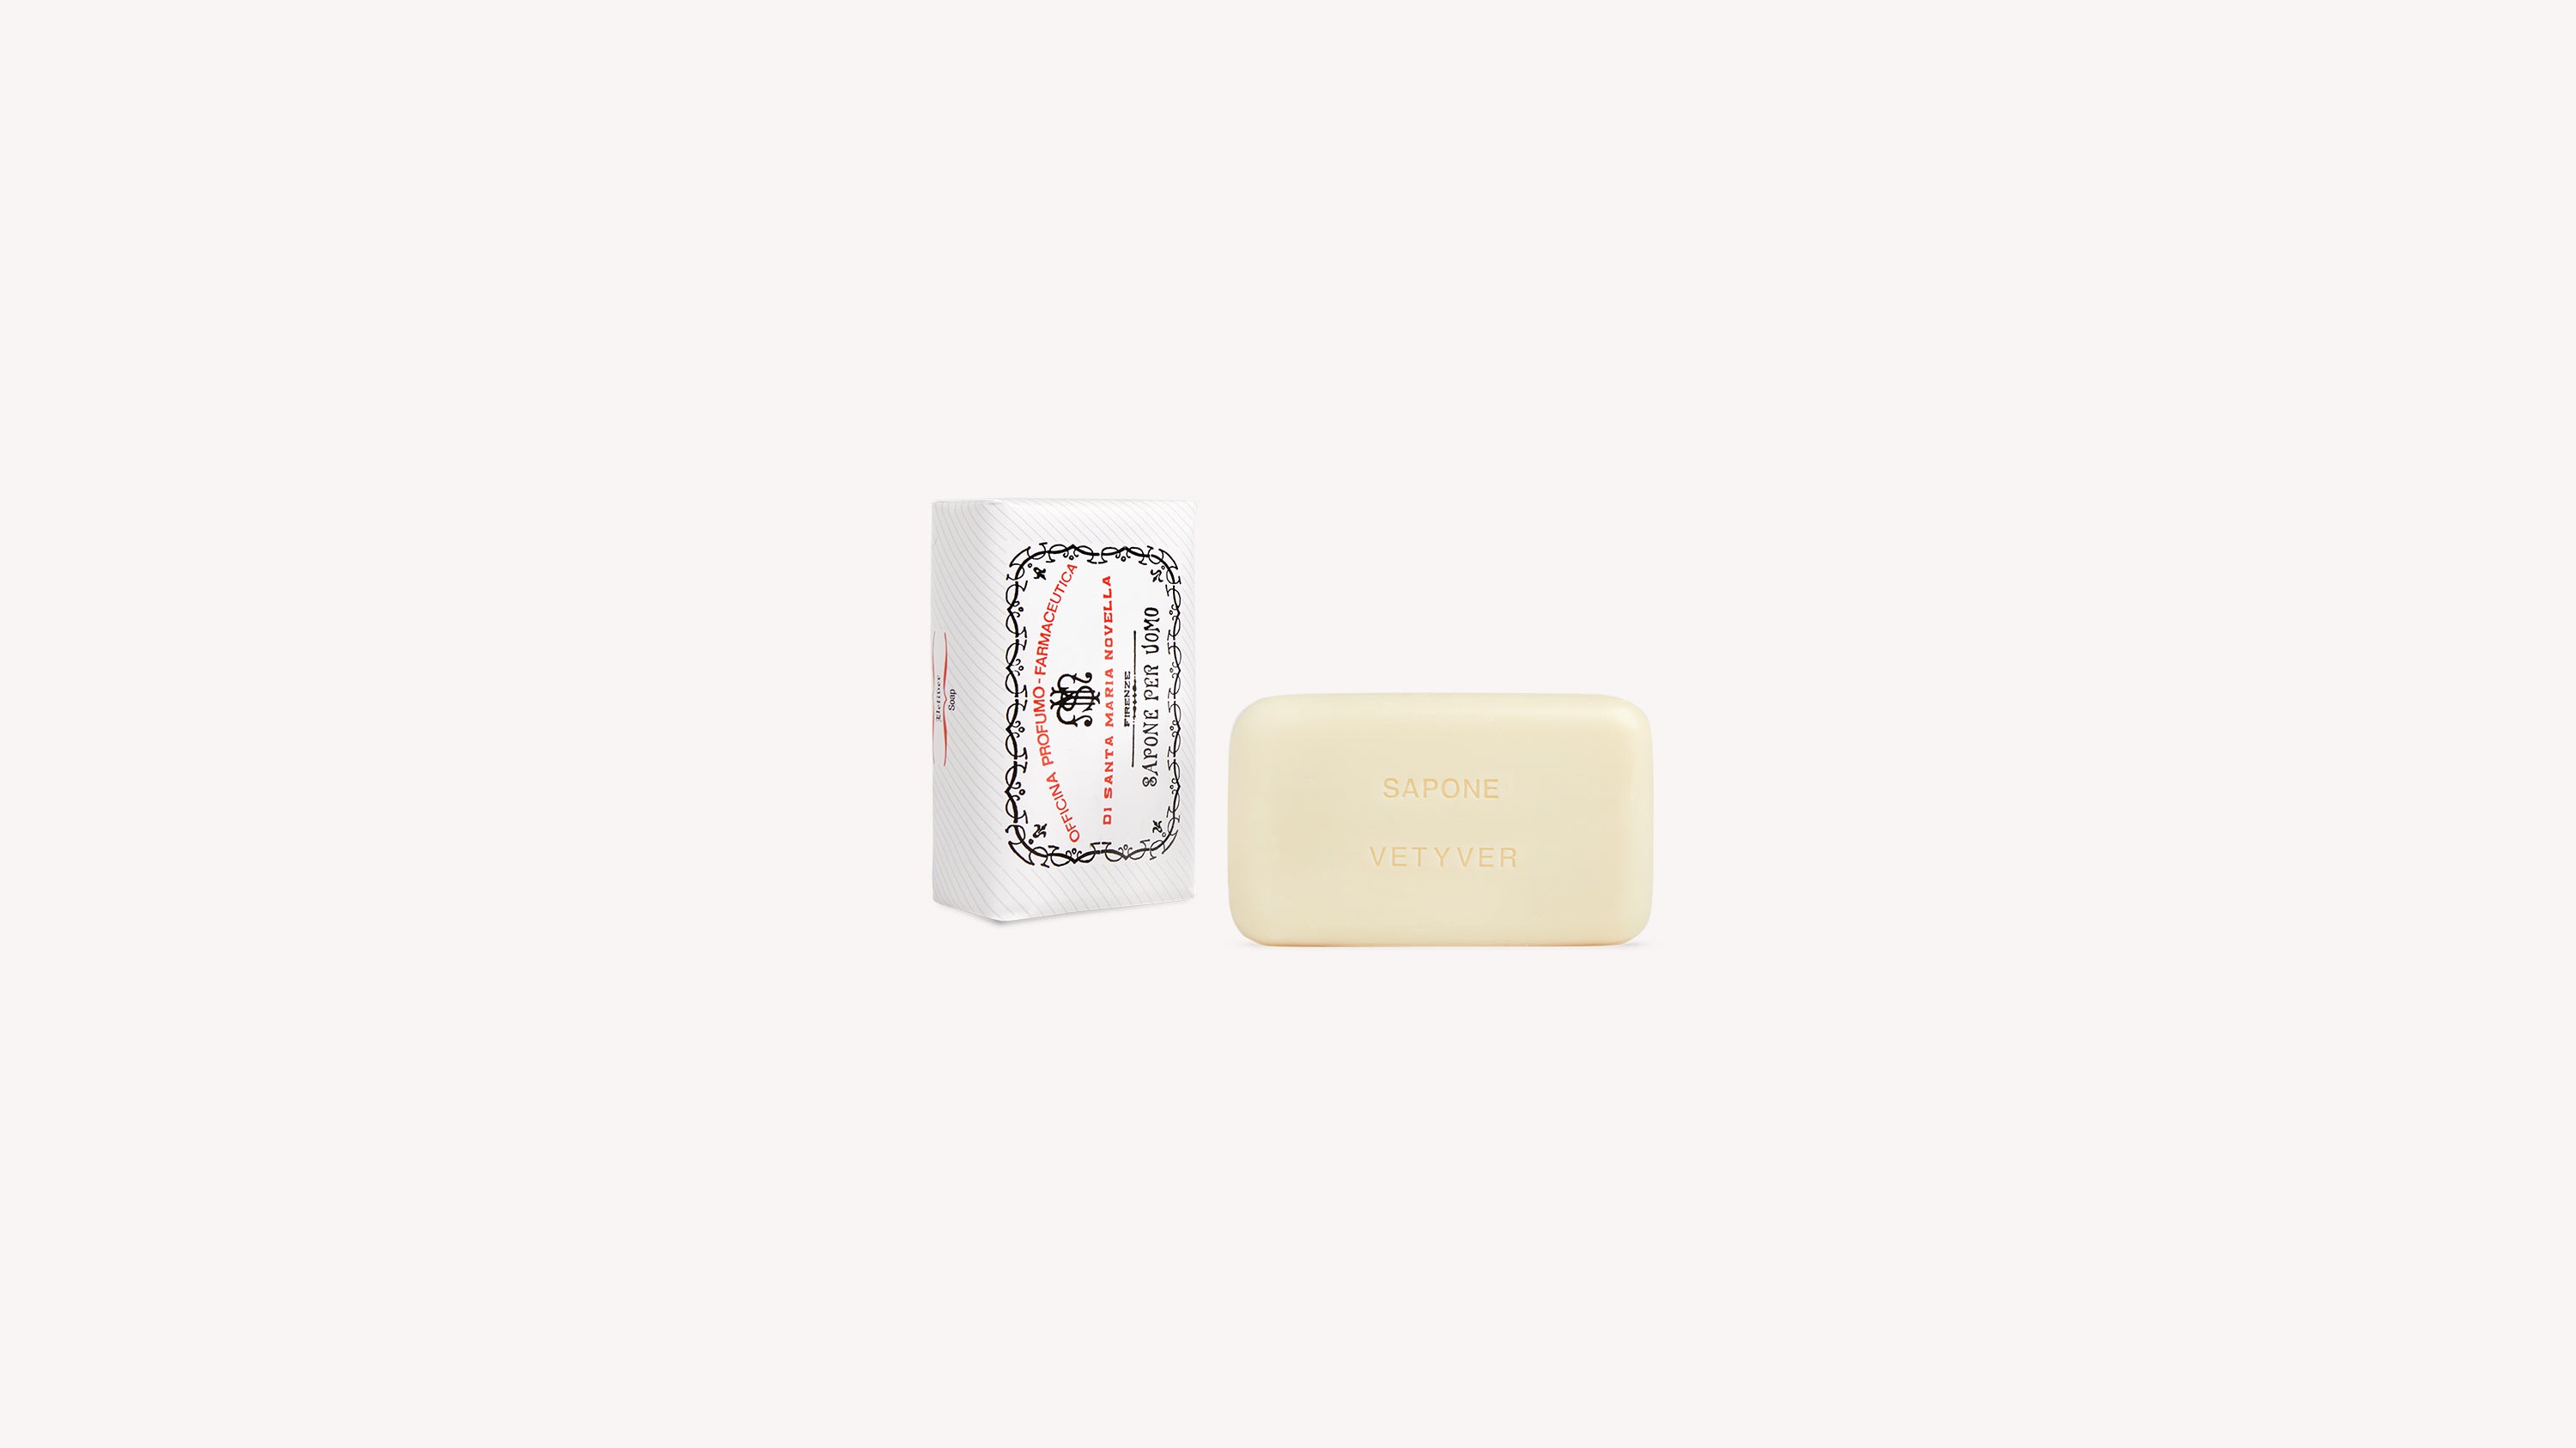 Vetiver Soap Body Care officina-smn-usa-ca.myshopify.com Officina Profumo Farmaceutica di Santa Maria Novella - US